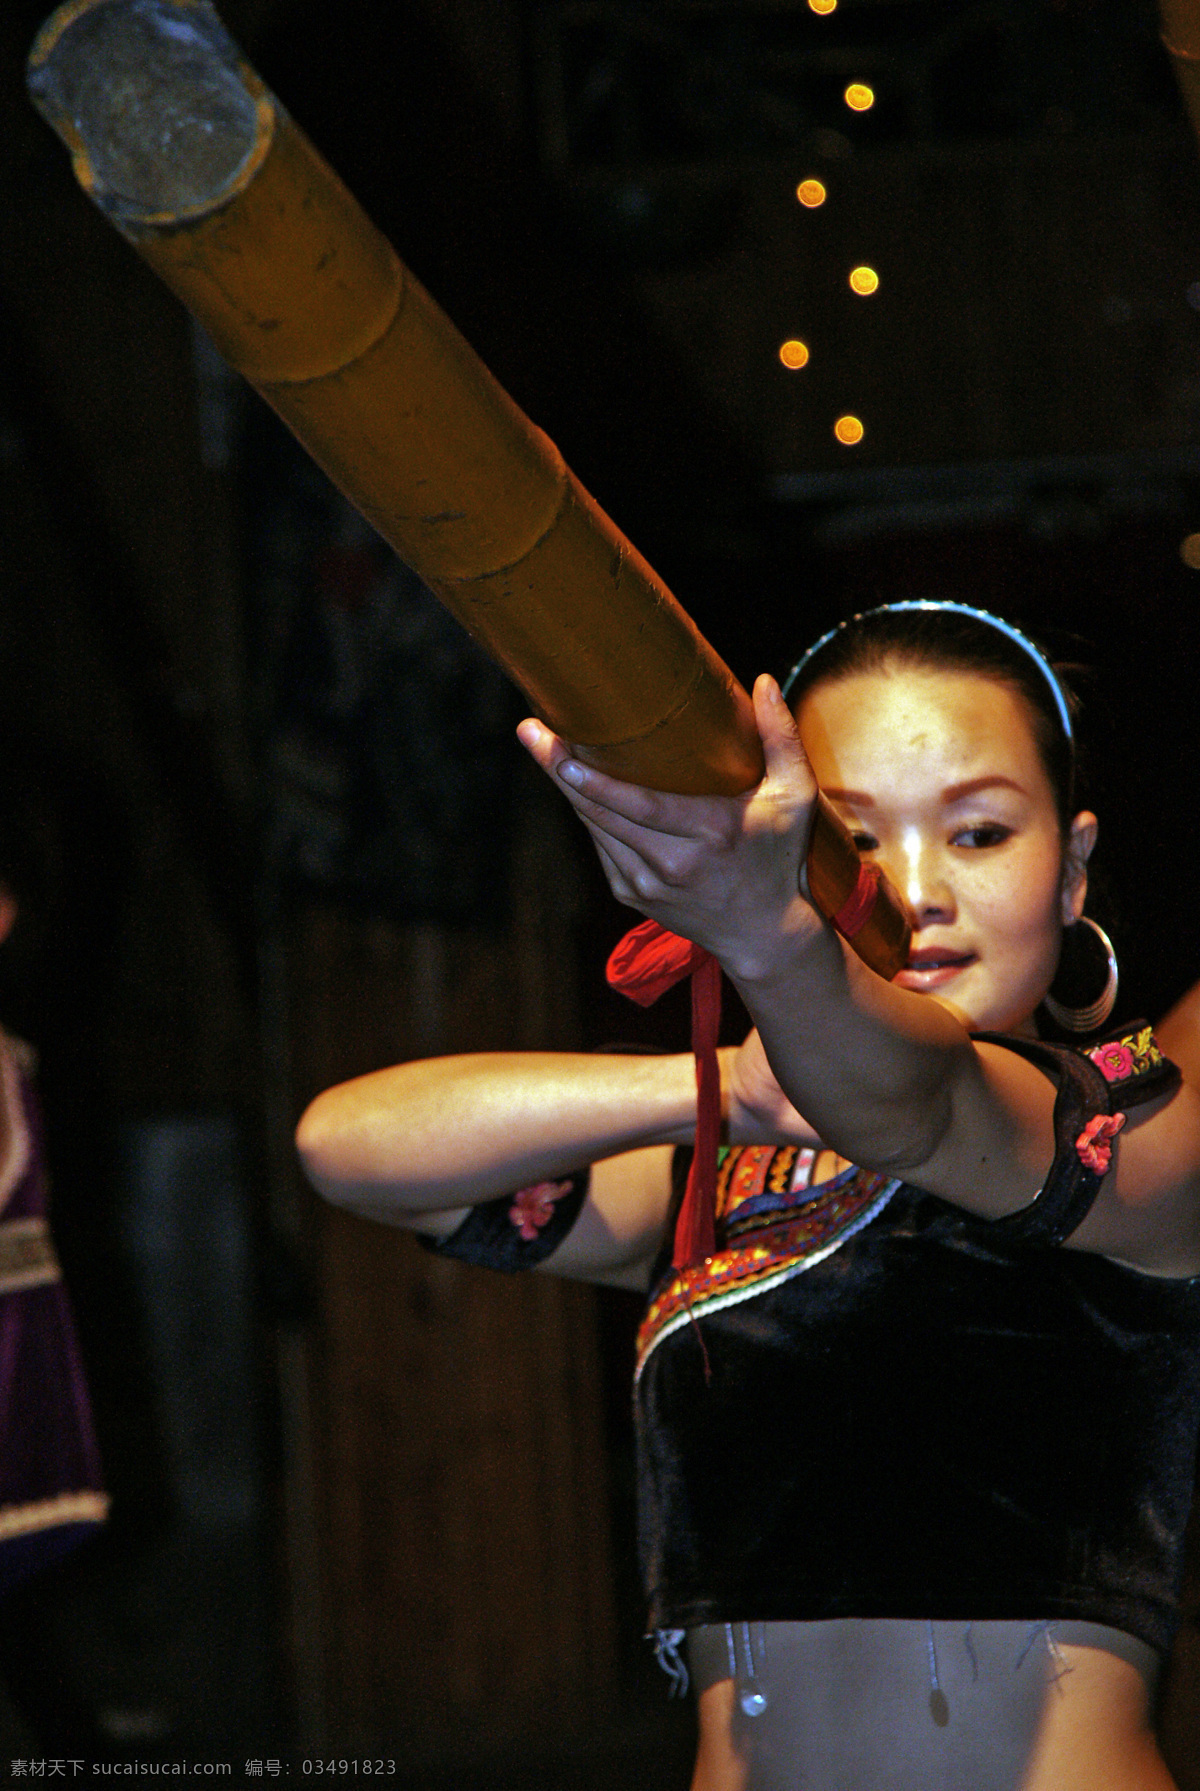 苗族 舞蹈图片 传统艺术 少女 文化艺术 舞蹈 舞蹈音乐 苗族舞蹈 psd源文件